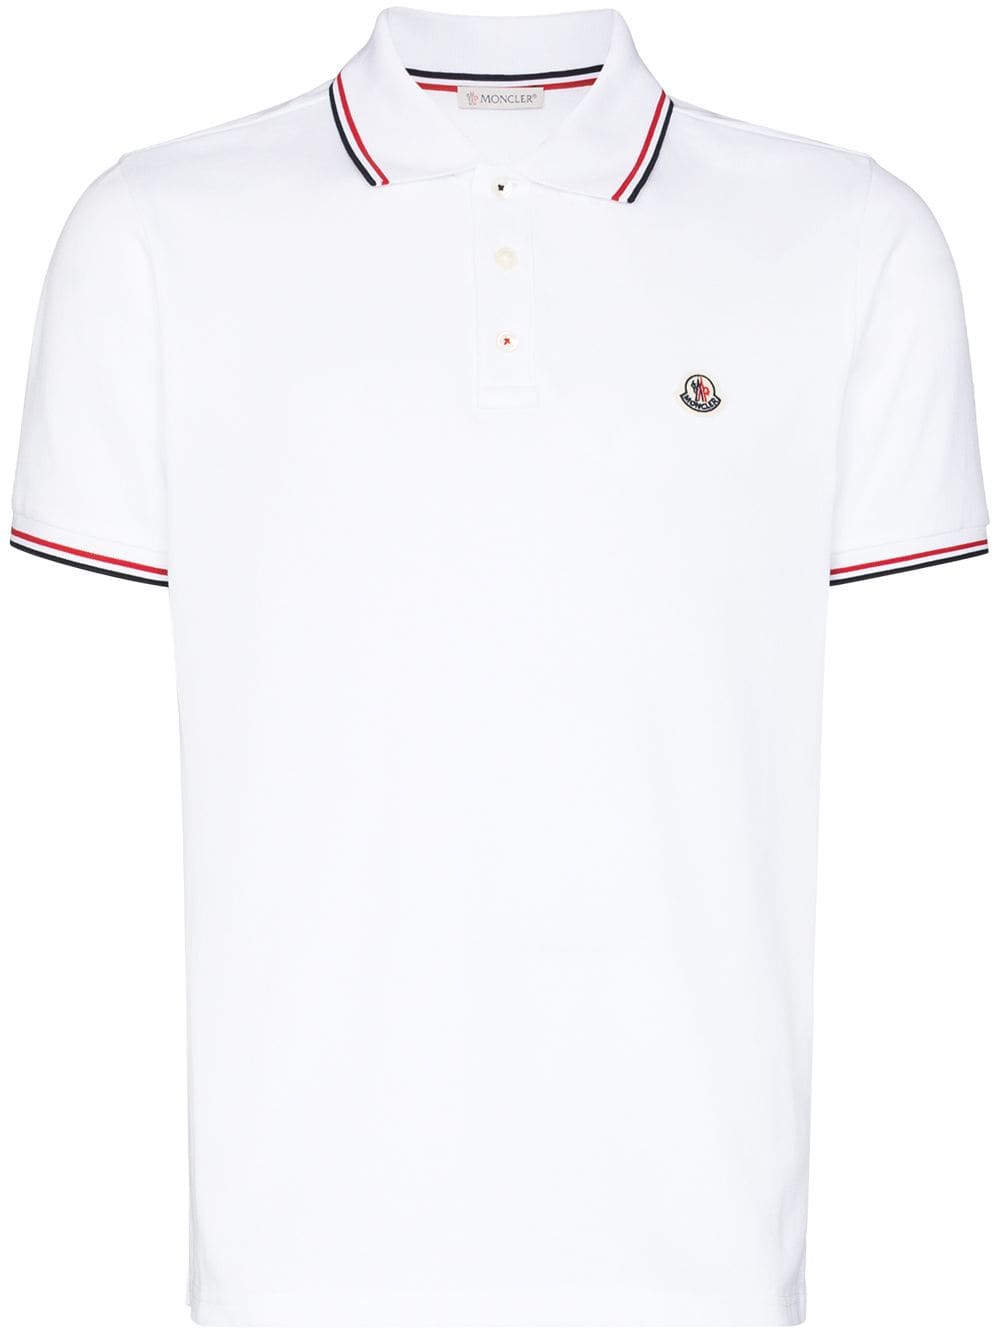 Moncler Polo blanc avec logo - Lothaire boutiques